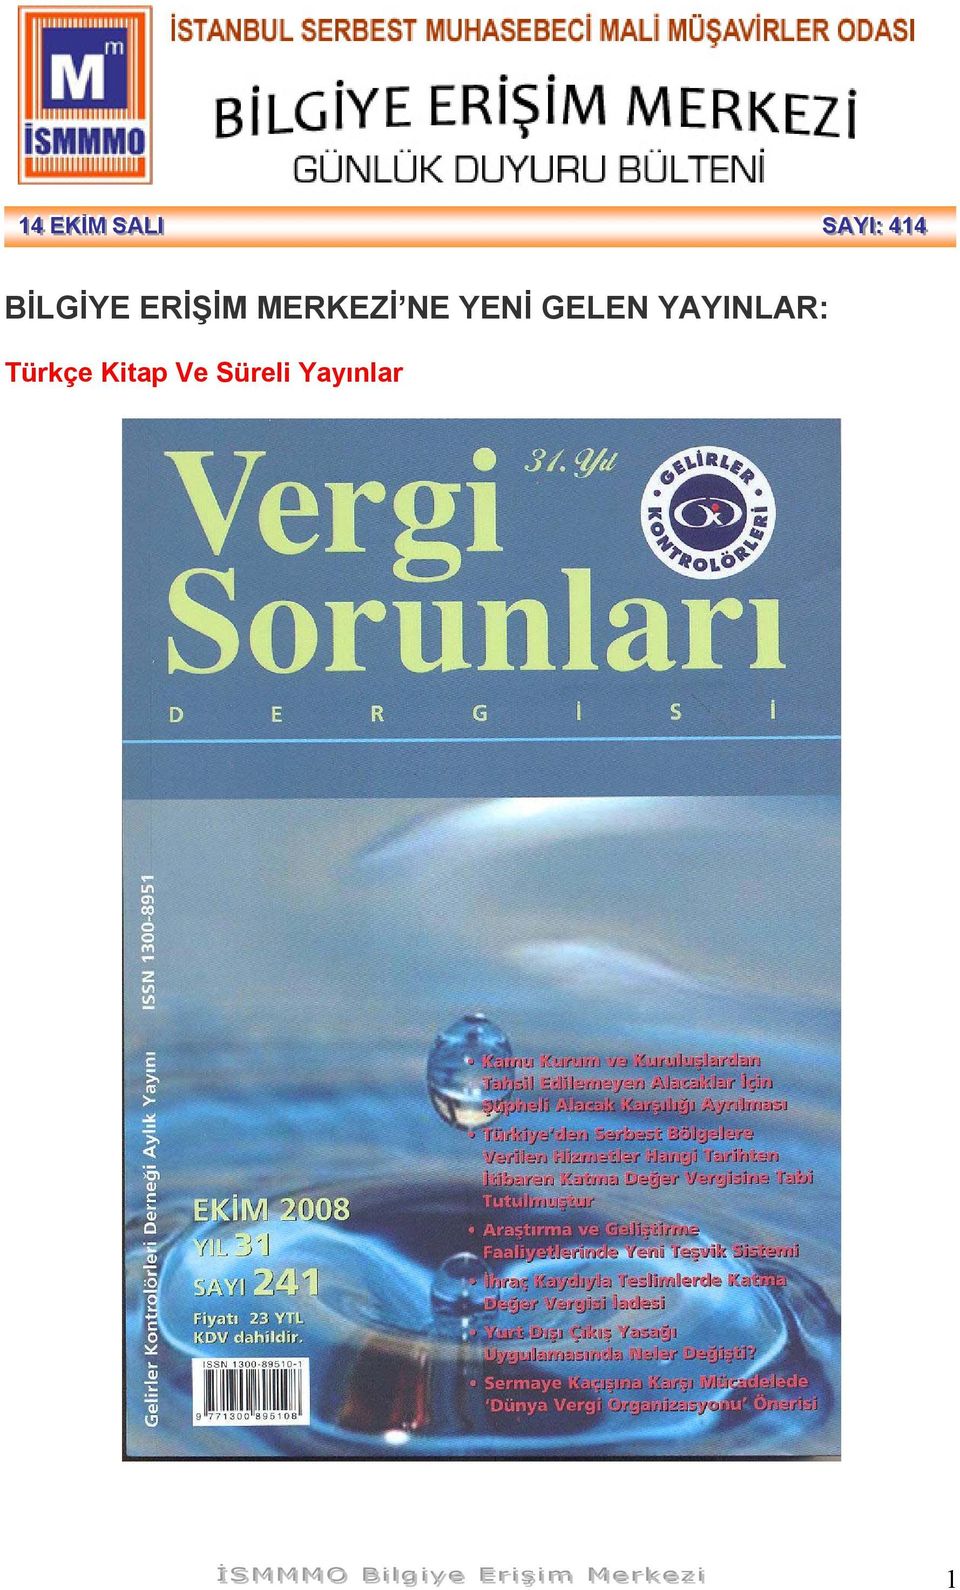 Türkçe Kitap Ve Süreli Yayınlar İİ SS MM MM MM OO